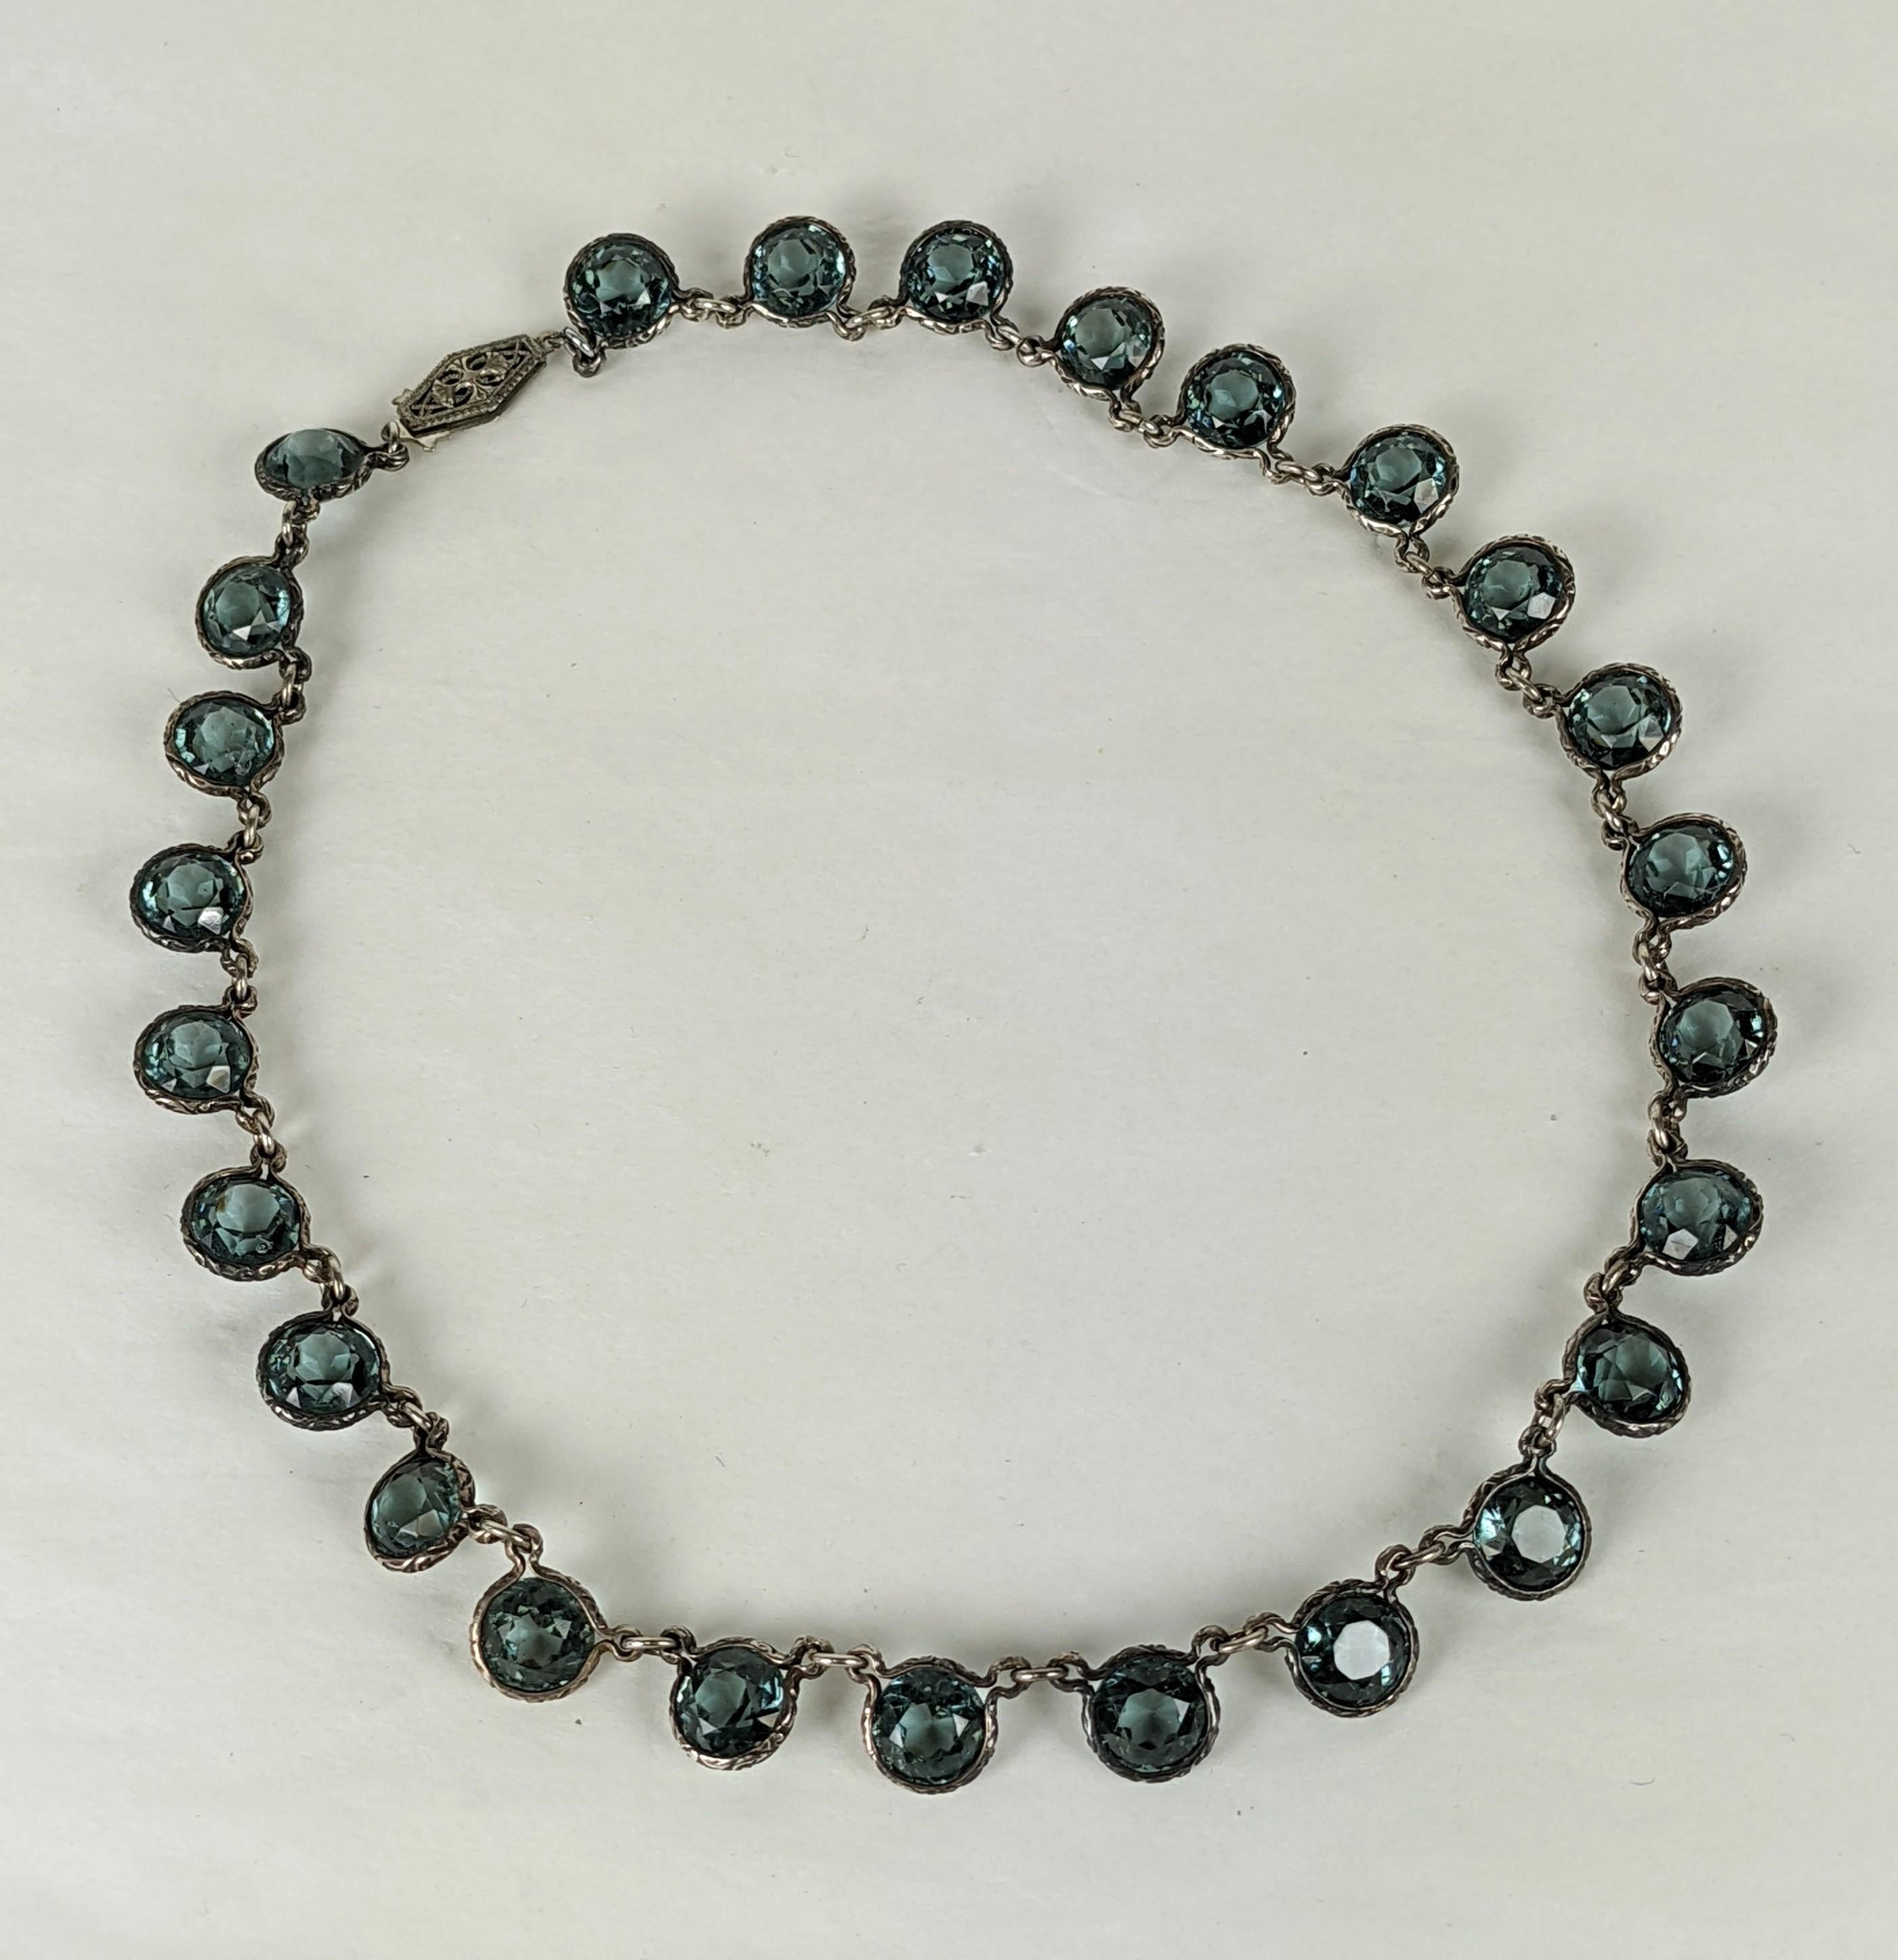 Art Deco Sterling Channel Crystal Halskette in Sterling mit faux blauen Zirkon-Kristallen besetzt. Die ungewöhnlichen Sterling-Fassungen und -Glieder sind mit geätzten Schnörkeln verziert und harmonieren gut mit dem tiefen Blau der Steine. 1920er